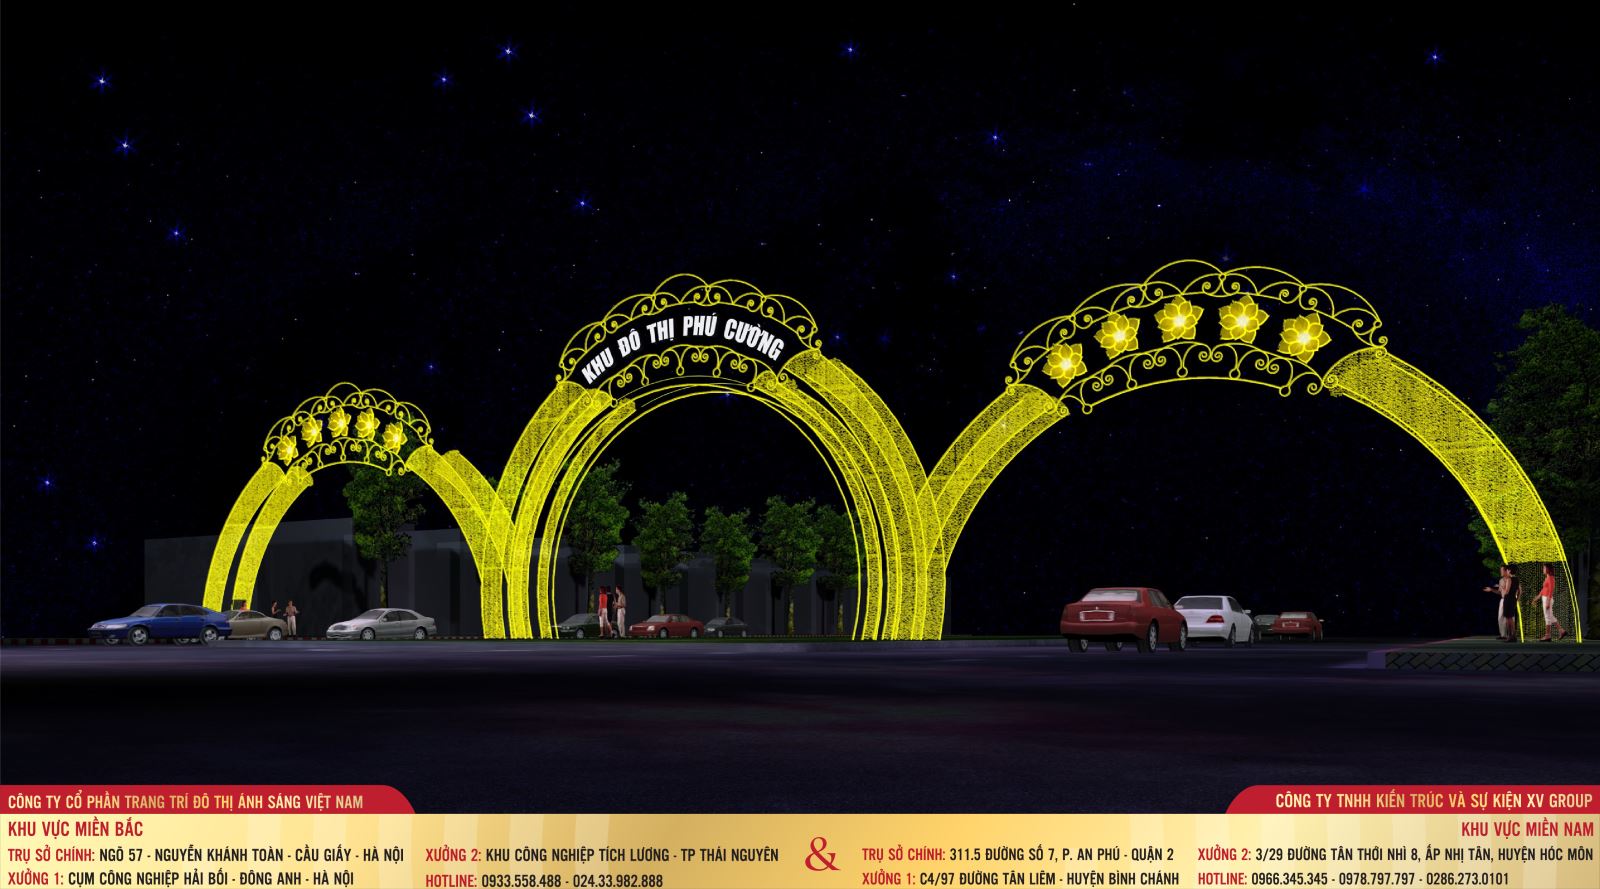 Trang trí đèn cổng chào giúp các thành phố thể hiện sự hiếu khách, ấm áp, thân thiện